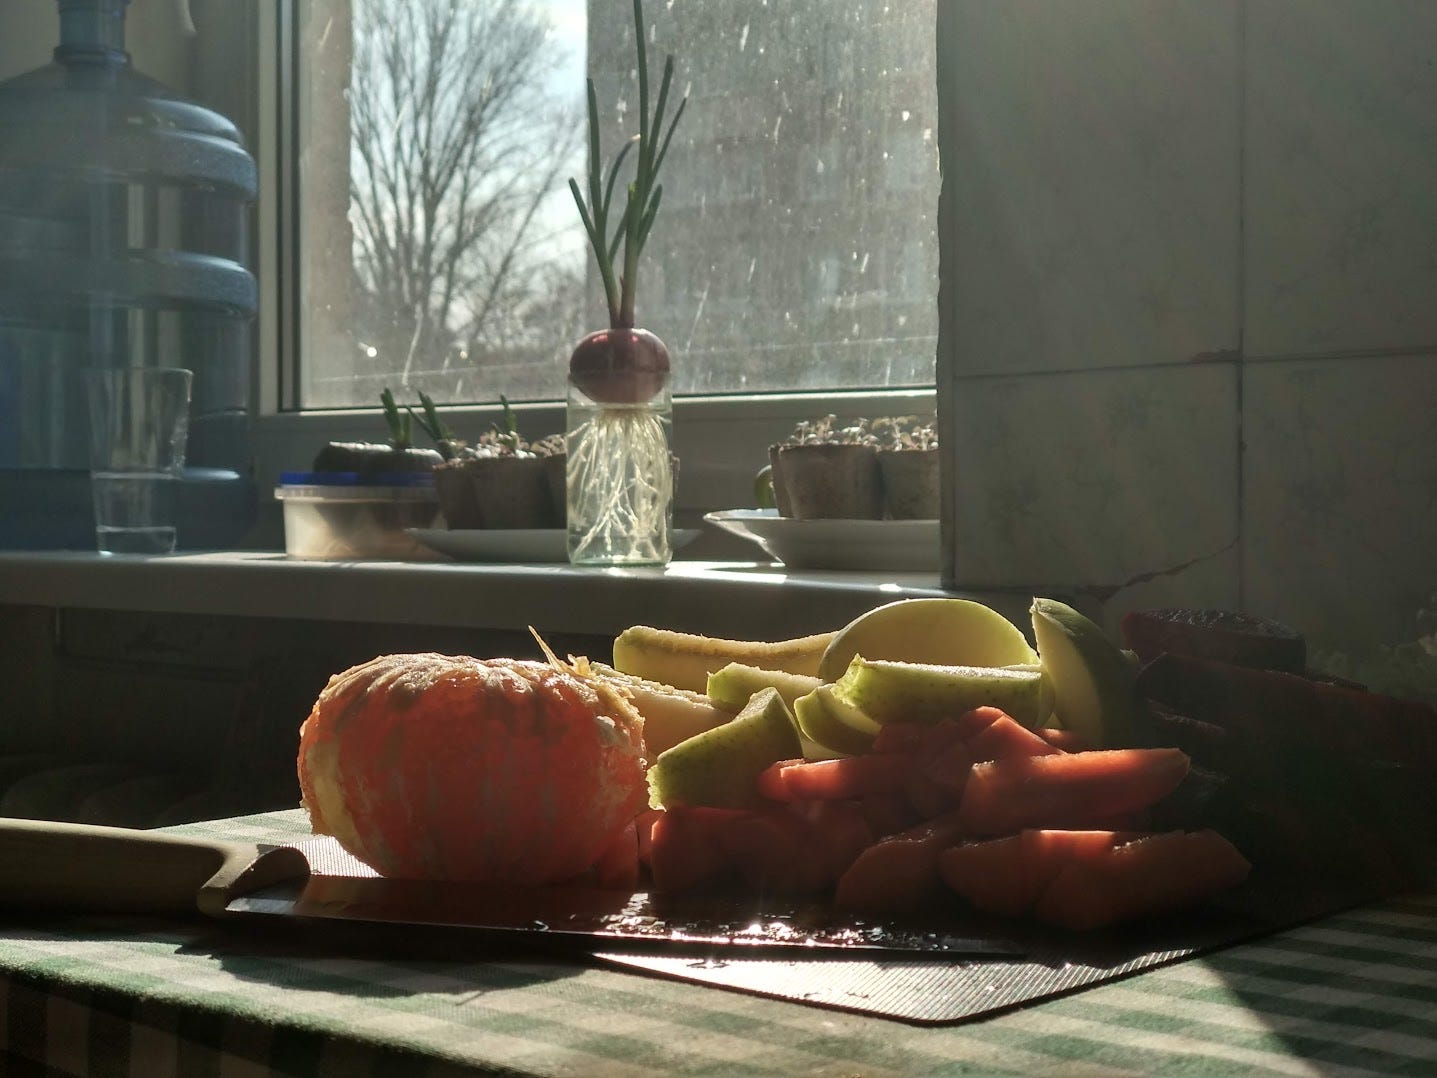 На передньому плані нарізані фрукти: мандарини, яблуко, морква. На задньому плані підвіконня, залите світлом, на ньому стоїть велика пляшка з водою, цибуля в баночці з водою, розсада. 